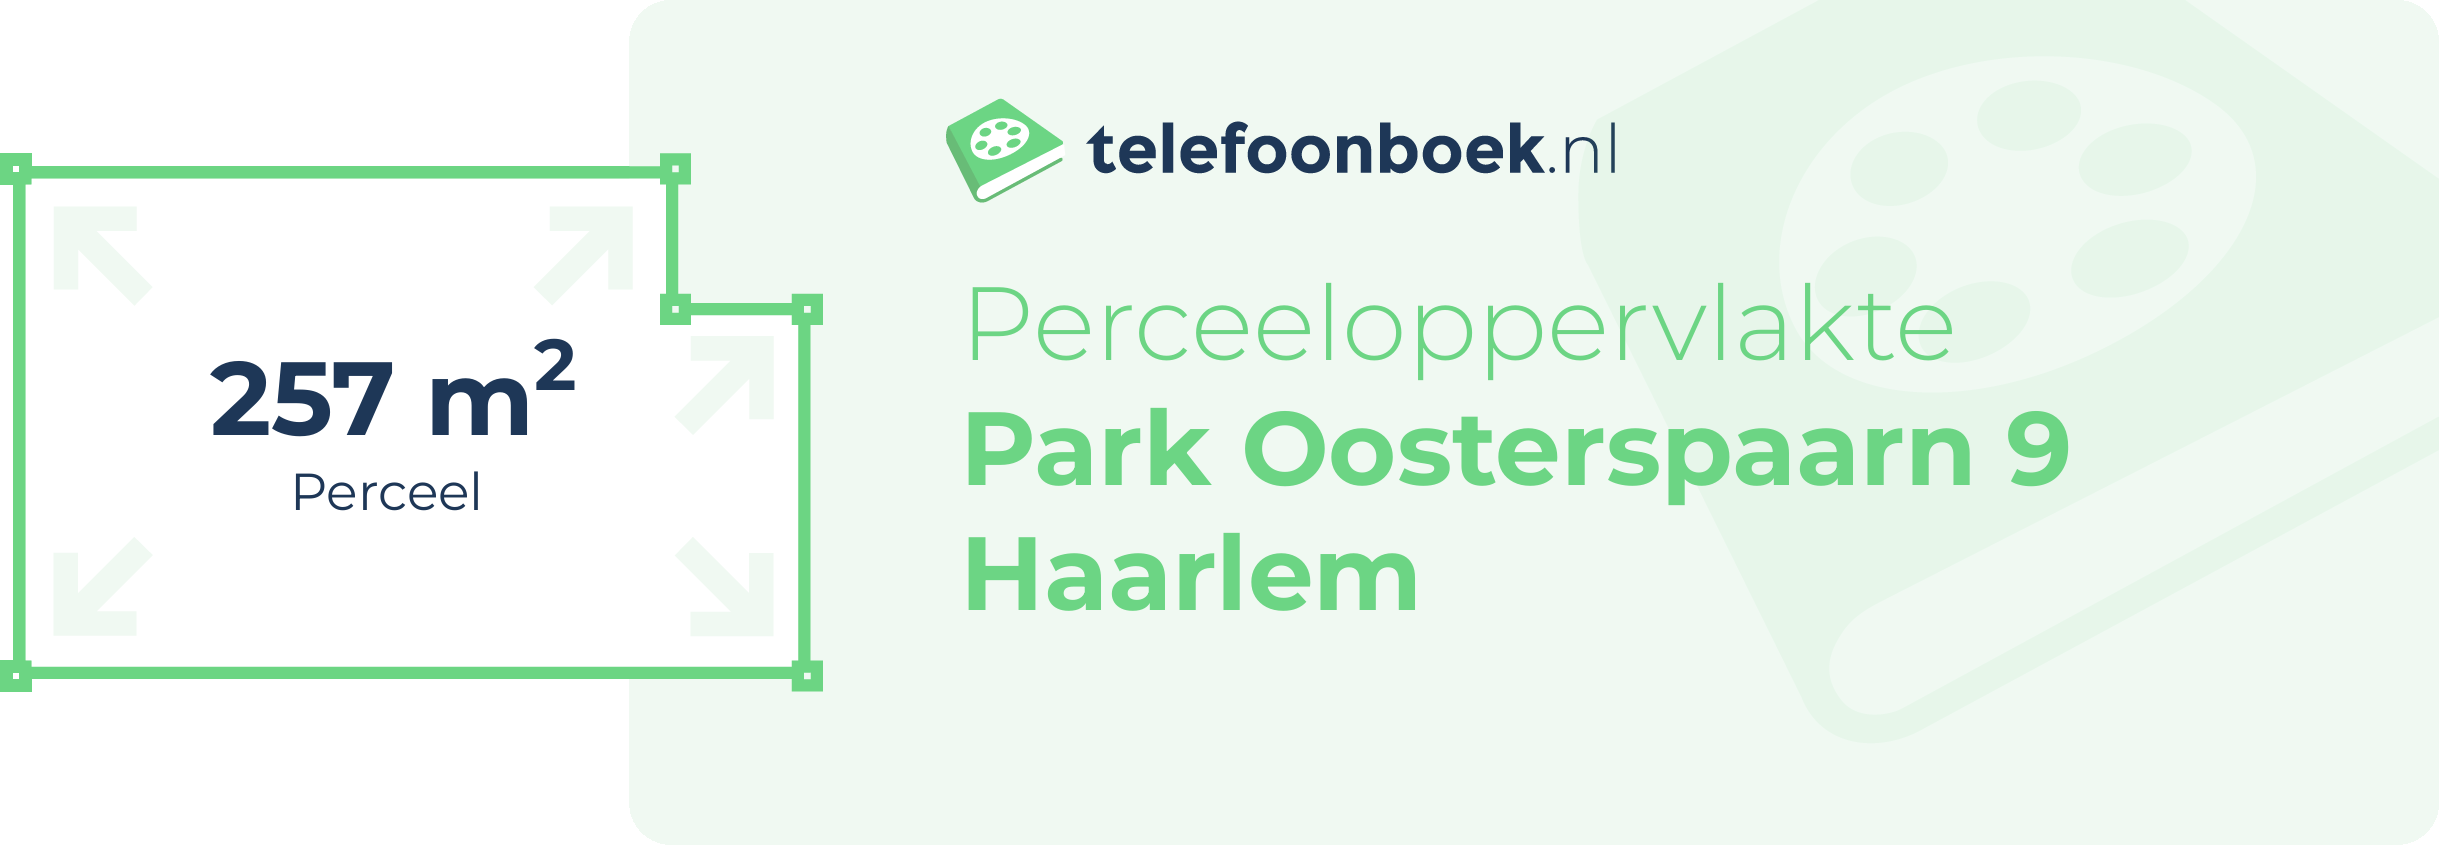 Perceeloppervlakte Park Oosterspaarn 9 Haarlem